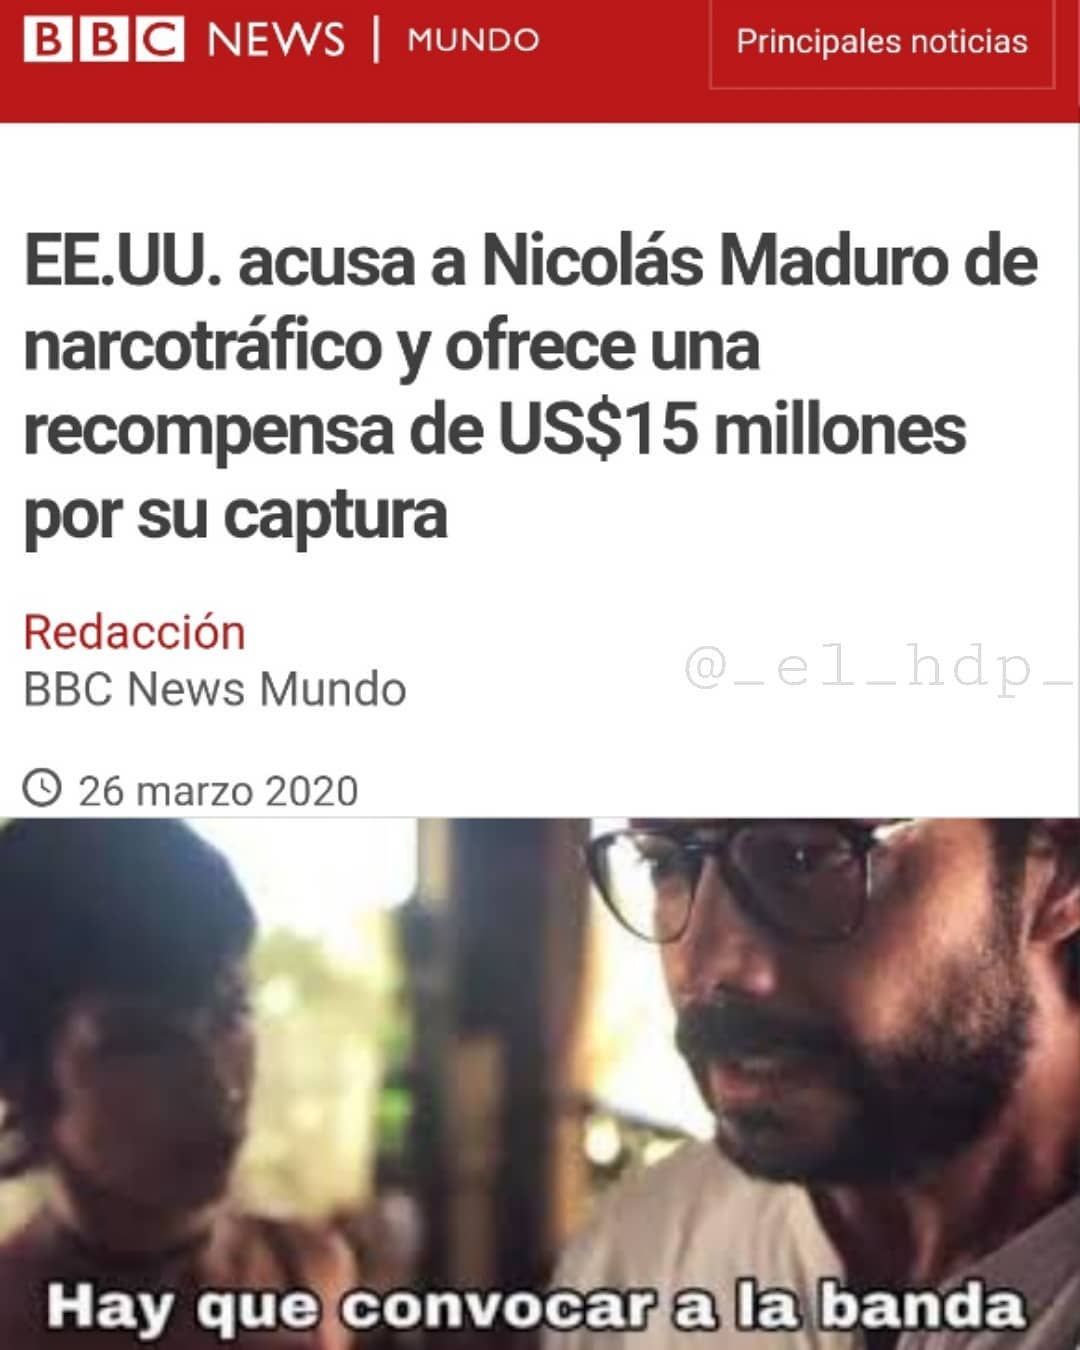 EE.UU. acusa a Nicolás Maduro de narcotráfico y ofrece una recompensa de US$15 millones por su captura.  Hay que convocar a la banda.